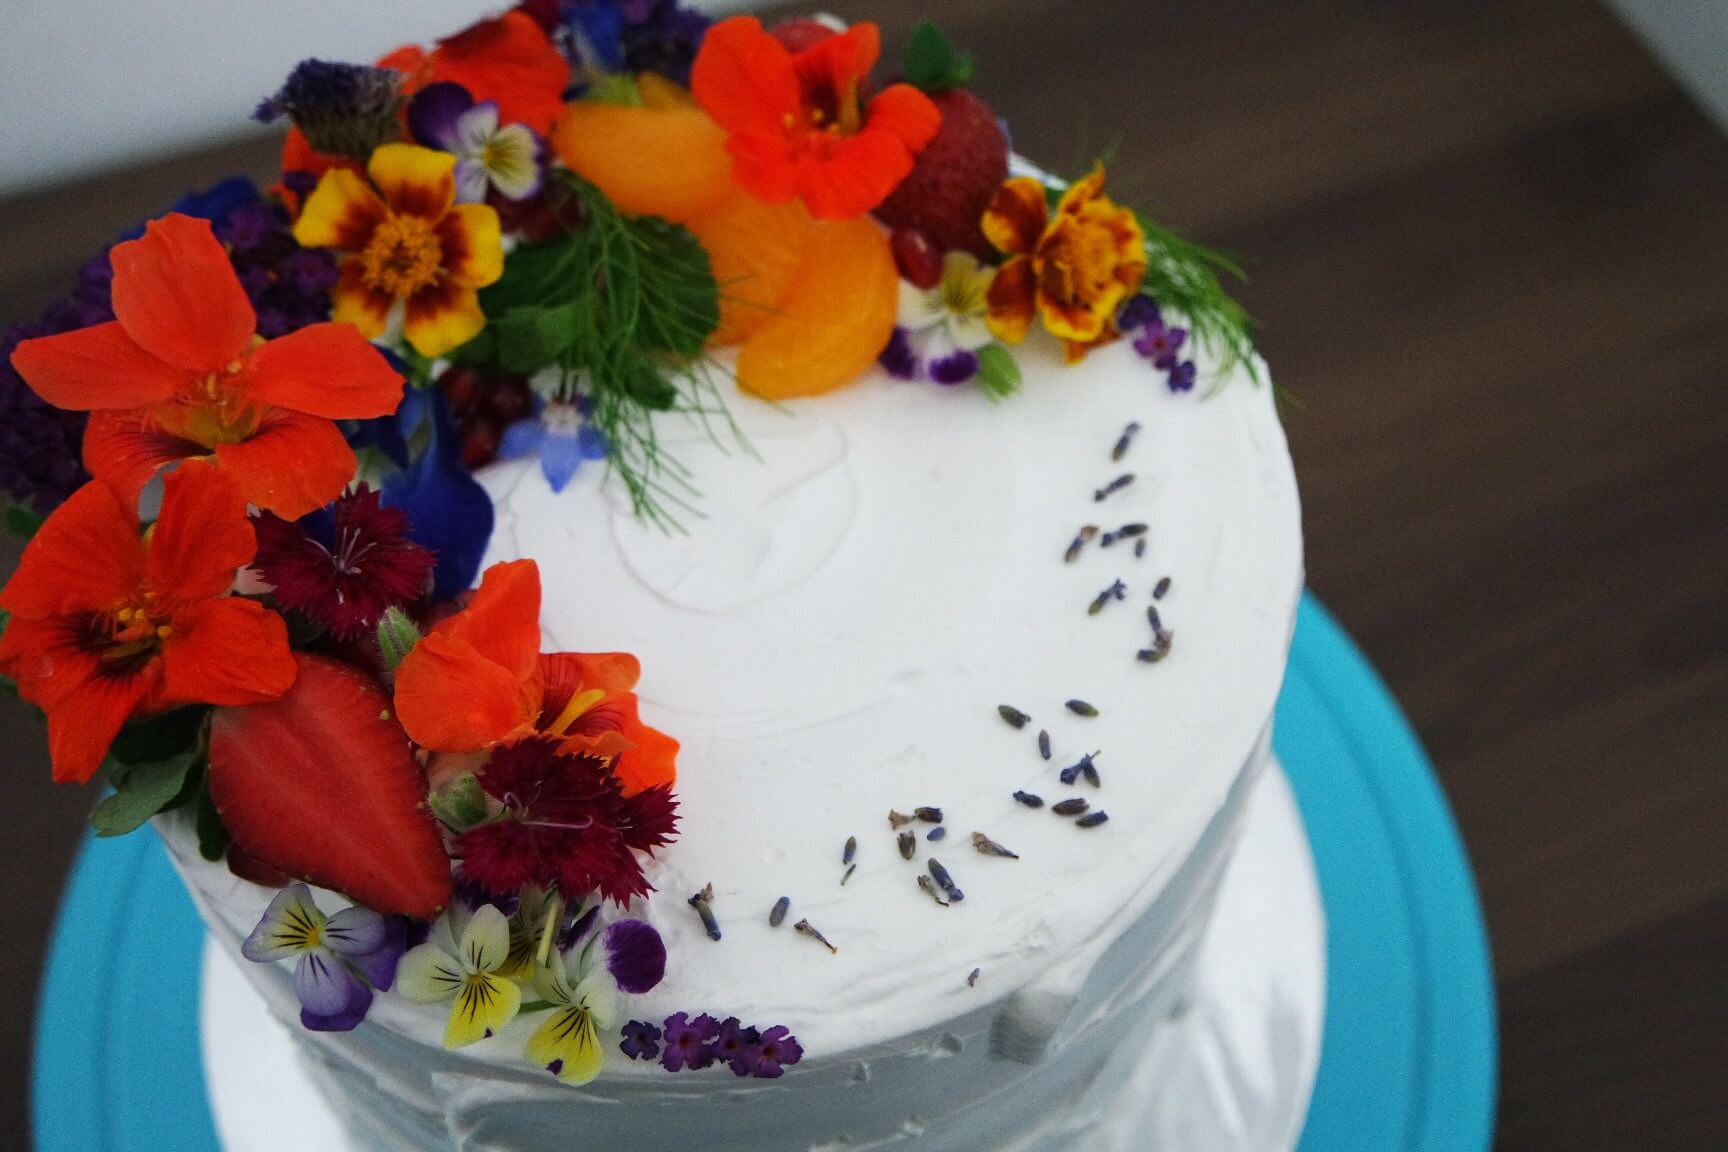 Edible Flower Membuat Kue Tart Kamu Makin Cantik Dan Beda, Dan Masih Banyak Lagi Kegunaannya